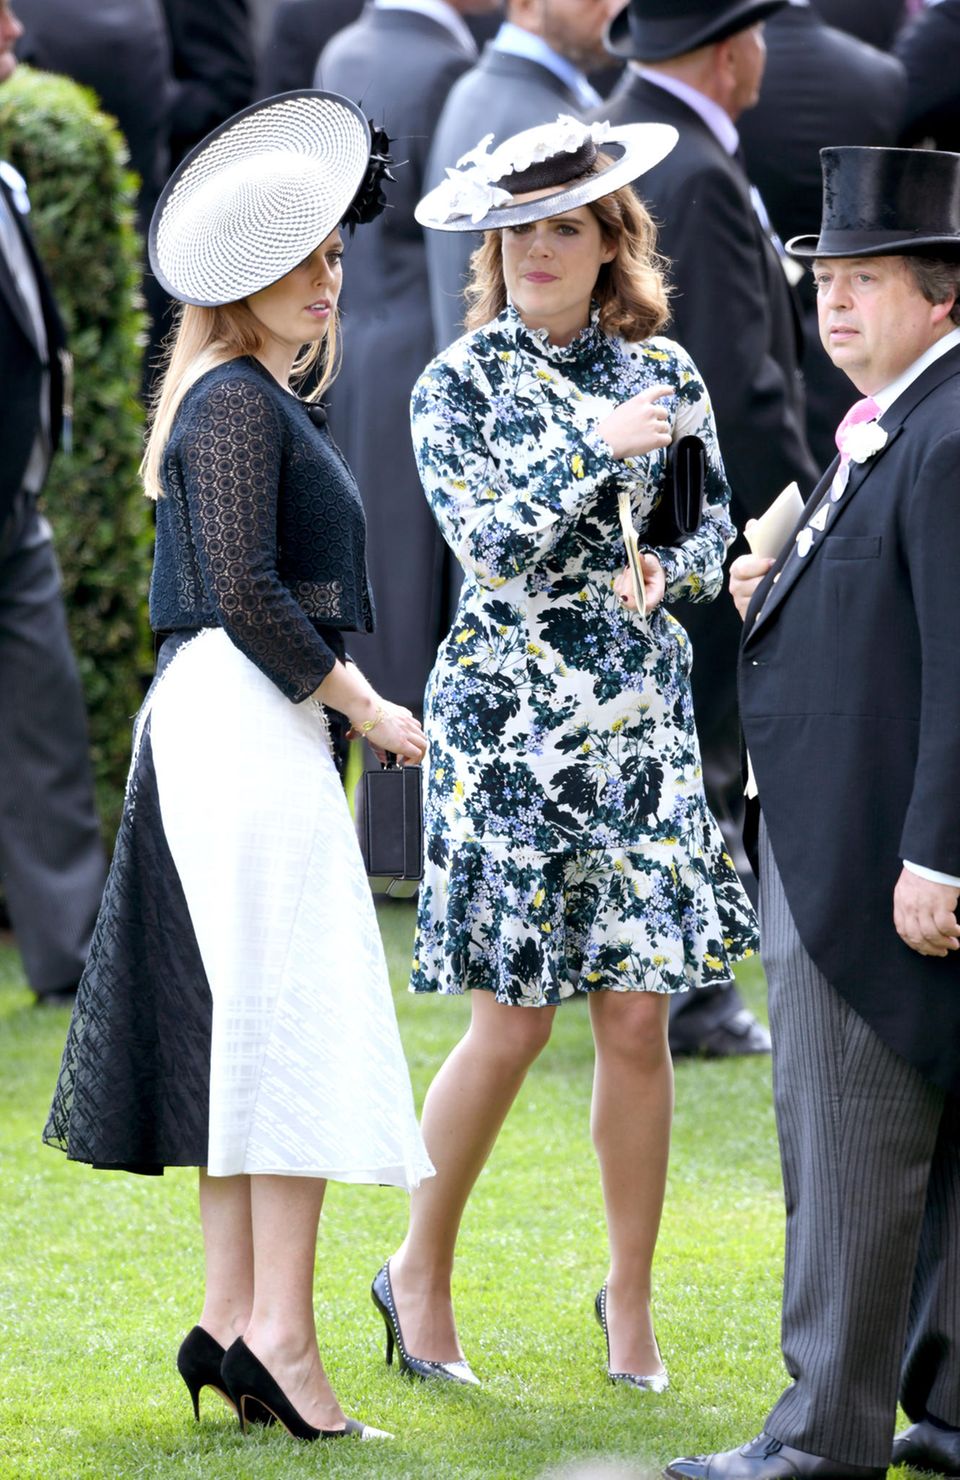 Gleiche Outfits der Royals: Prinzessin Eugenie mit Hut